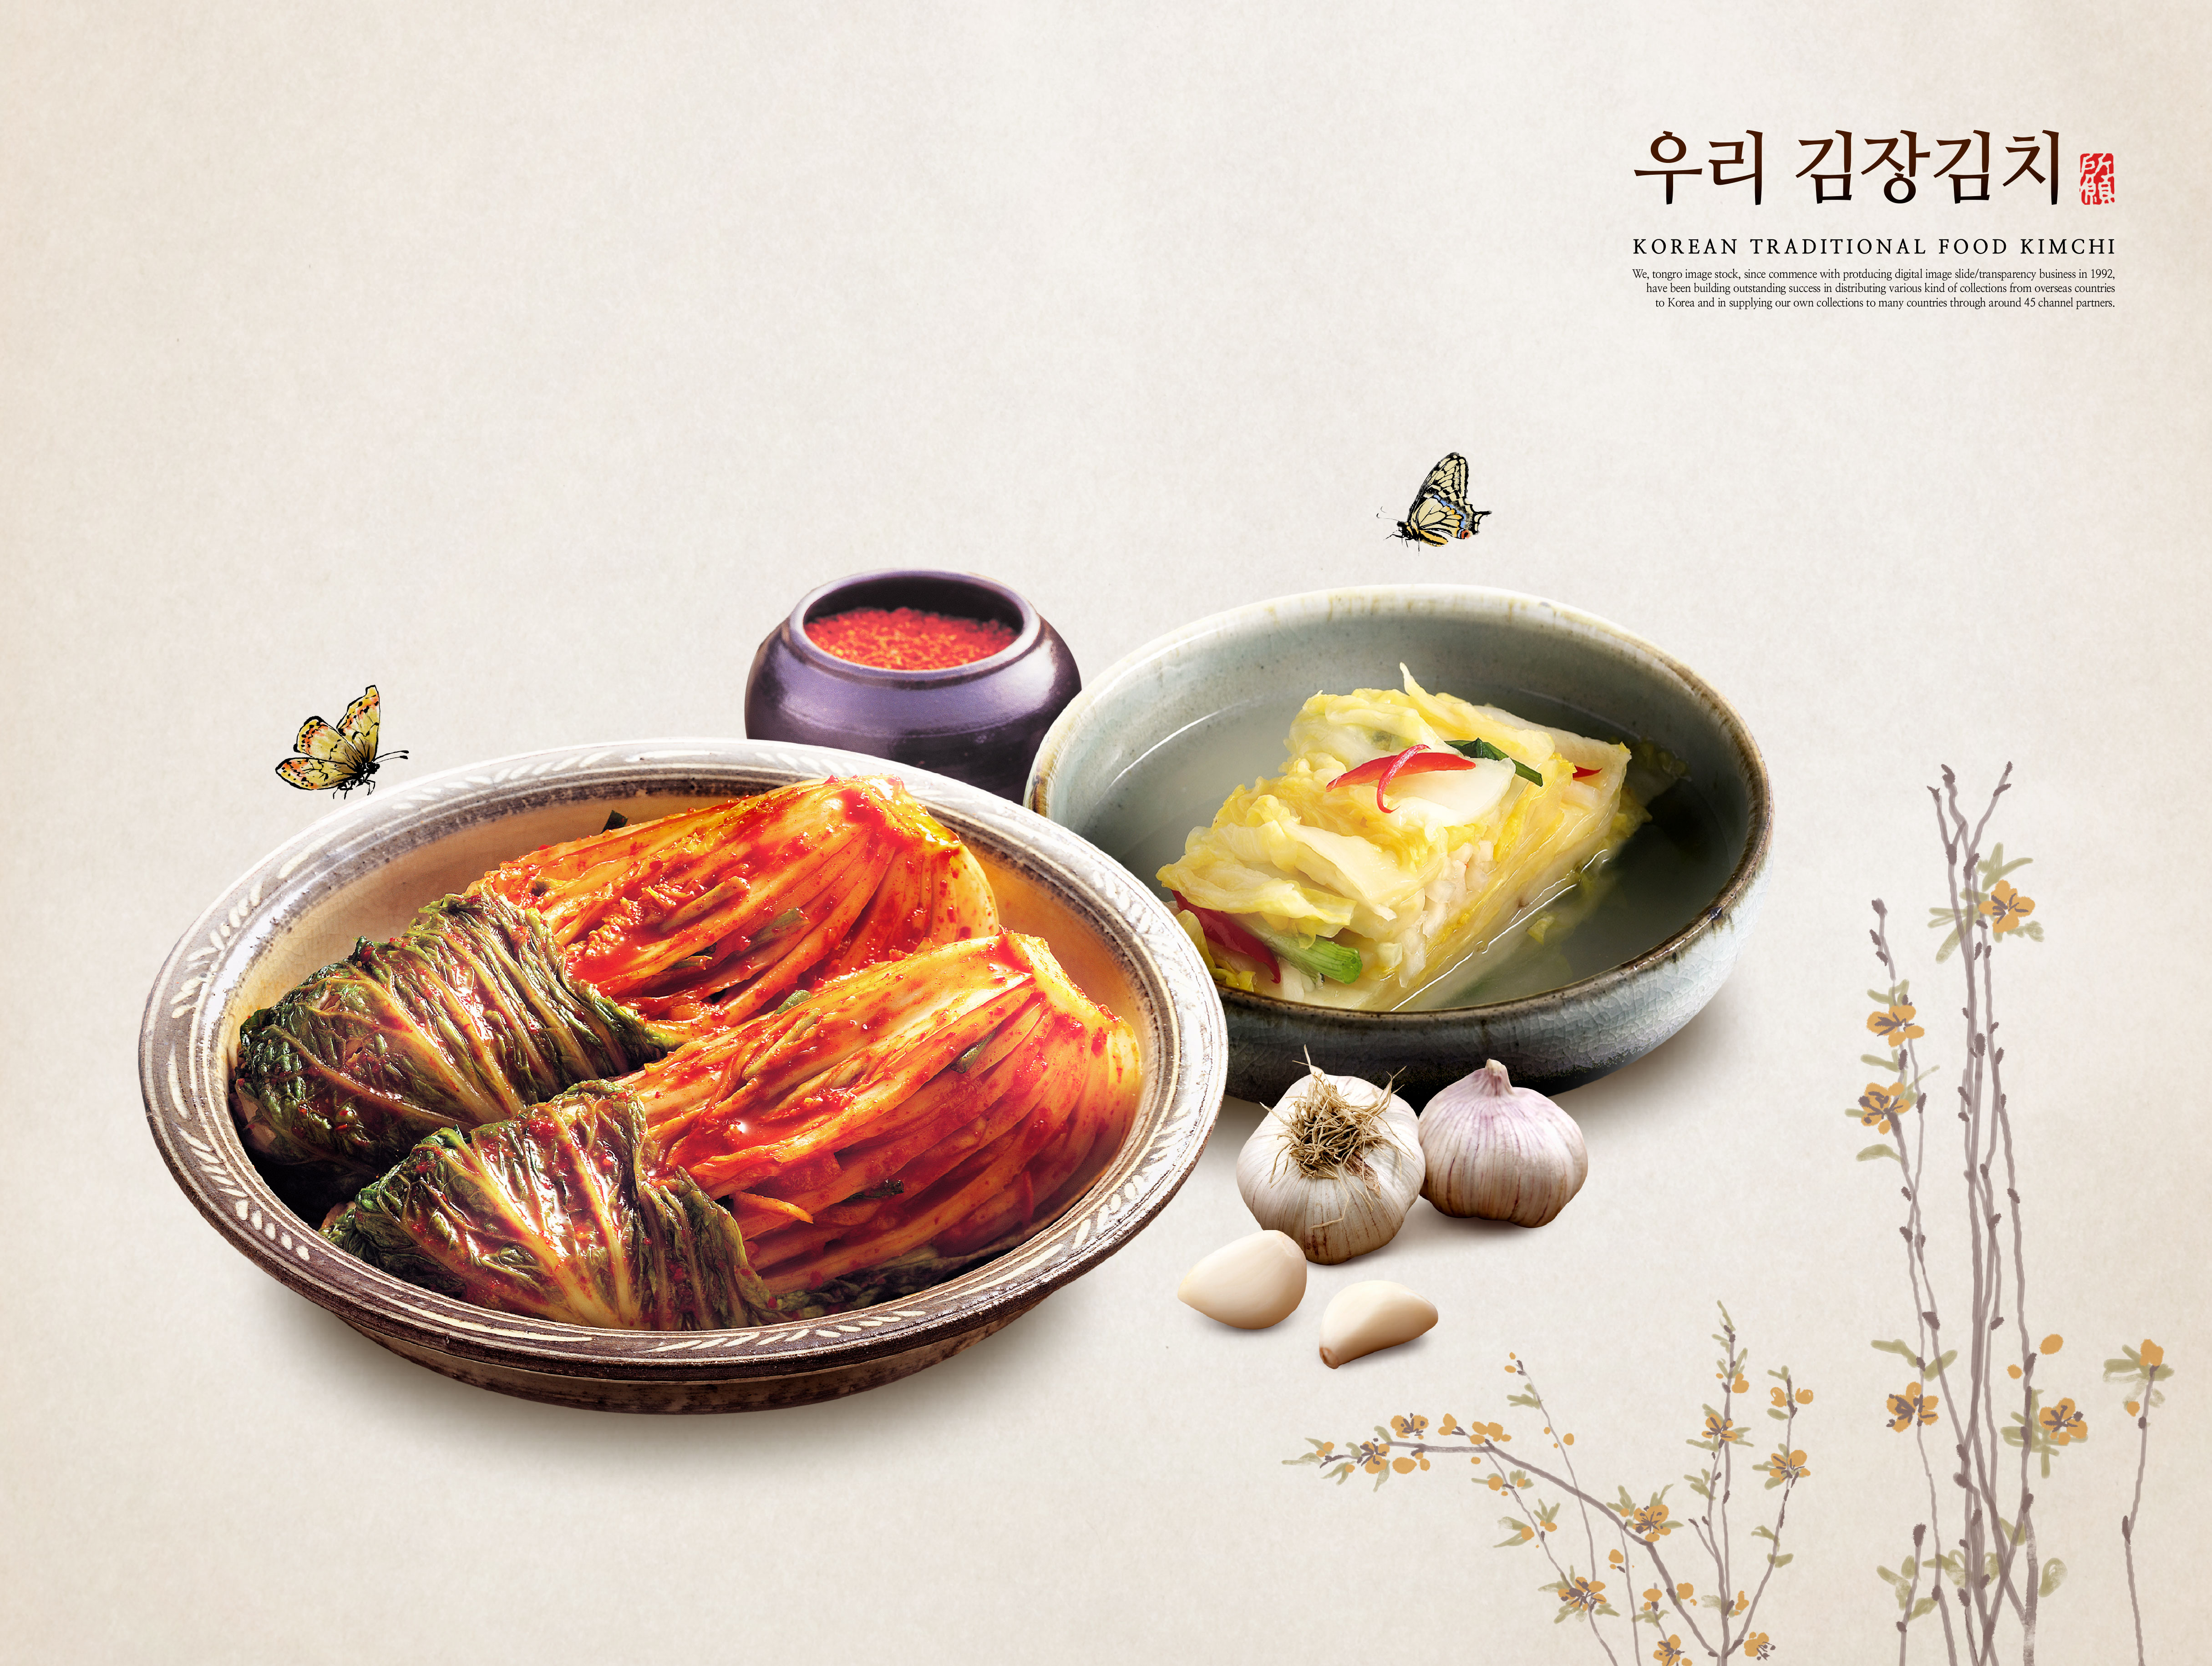 韩国传统美食泡菜食品广告海报psd素材插图